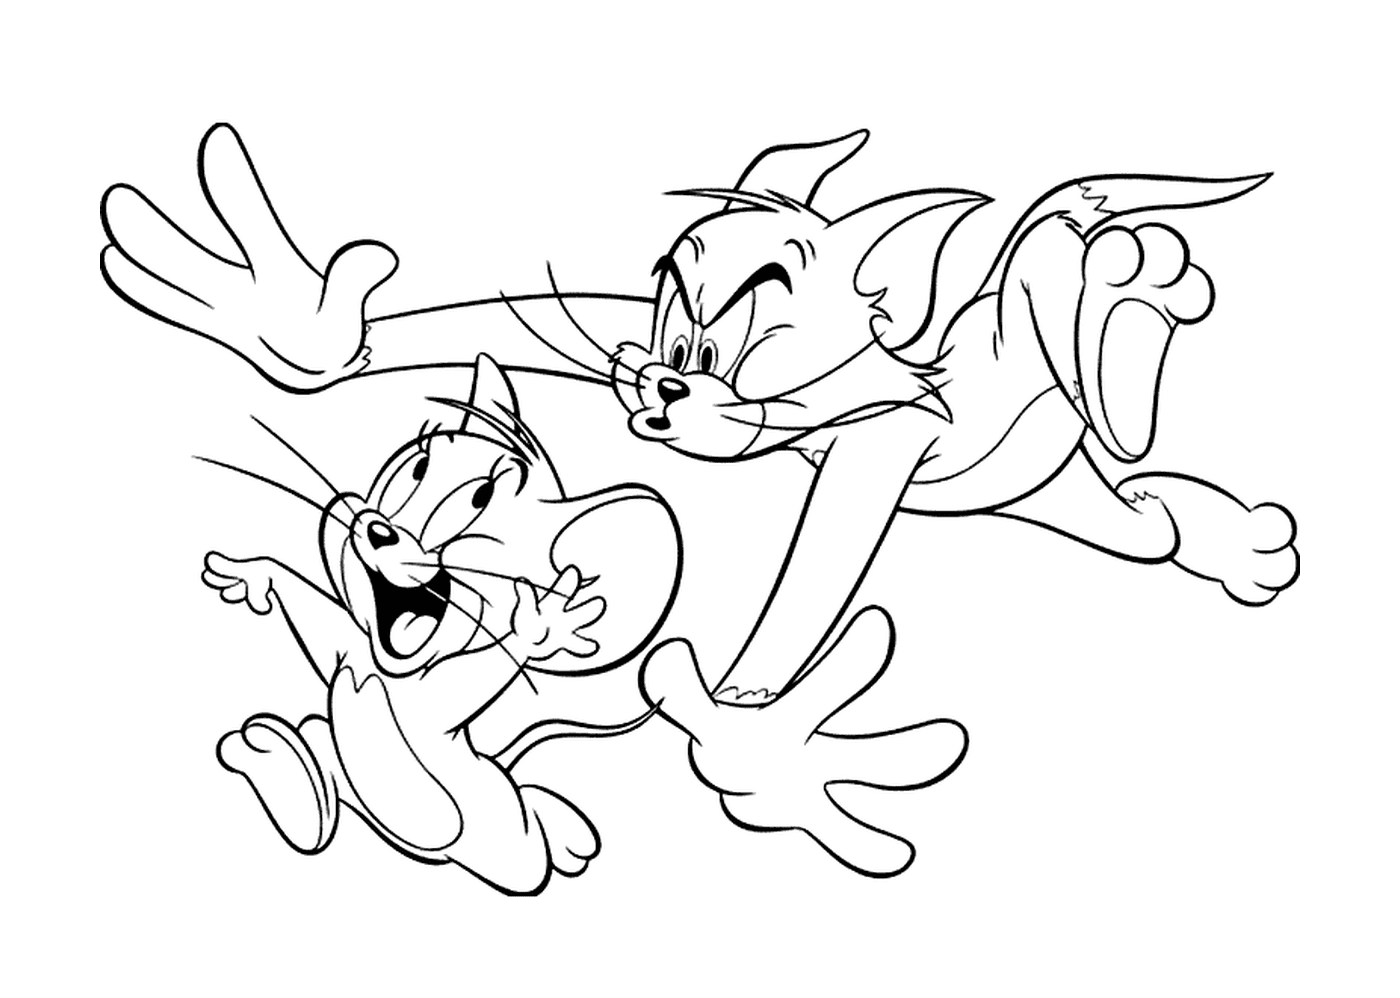  Tom runs after Jerry 